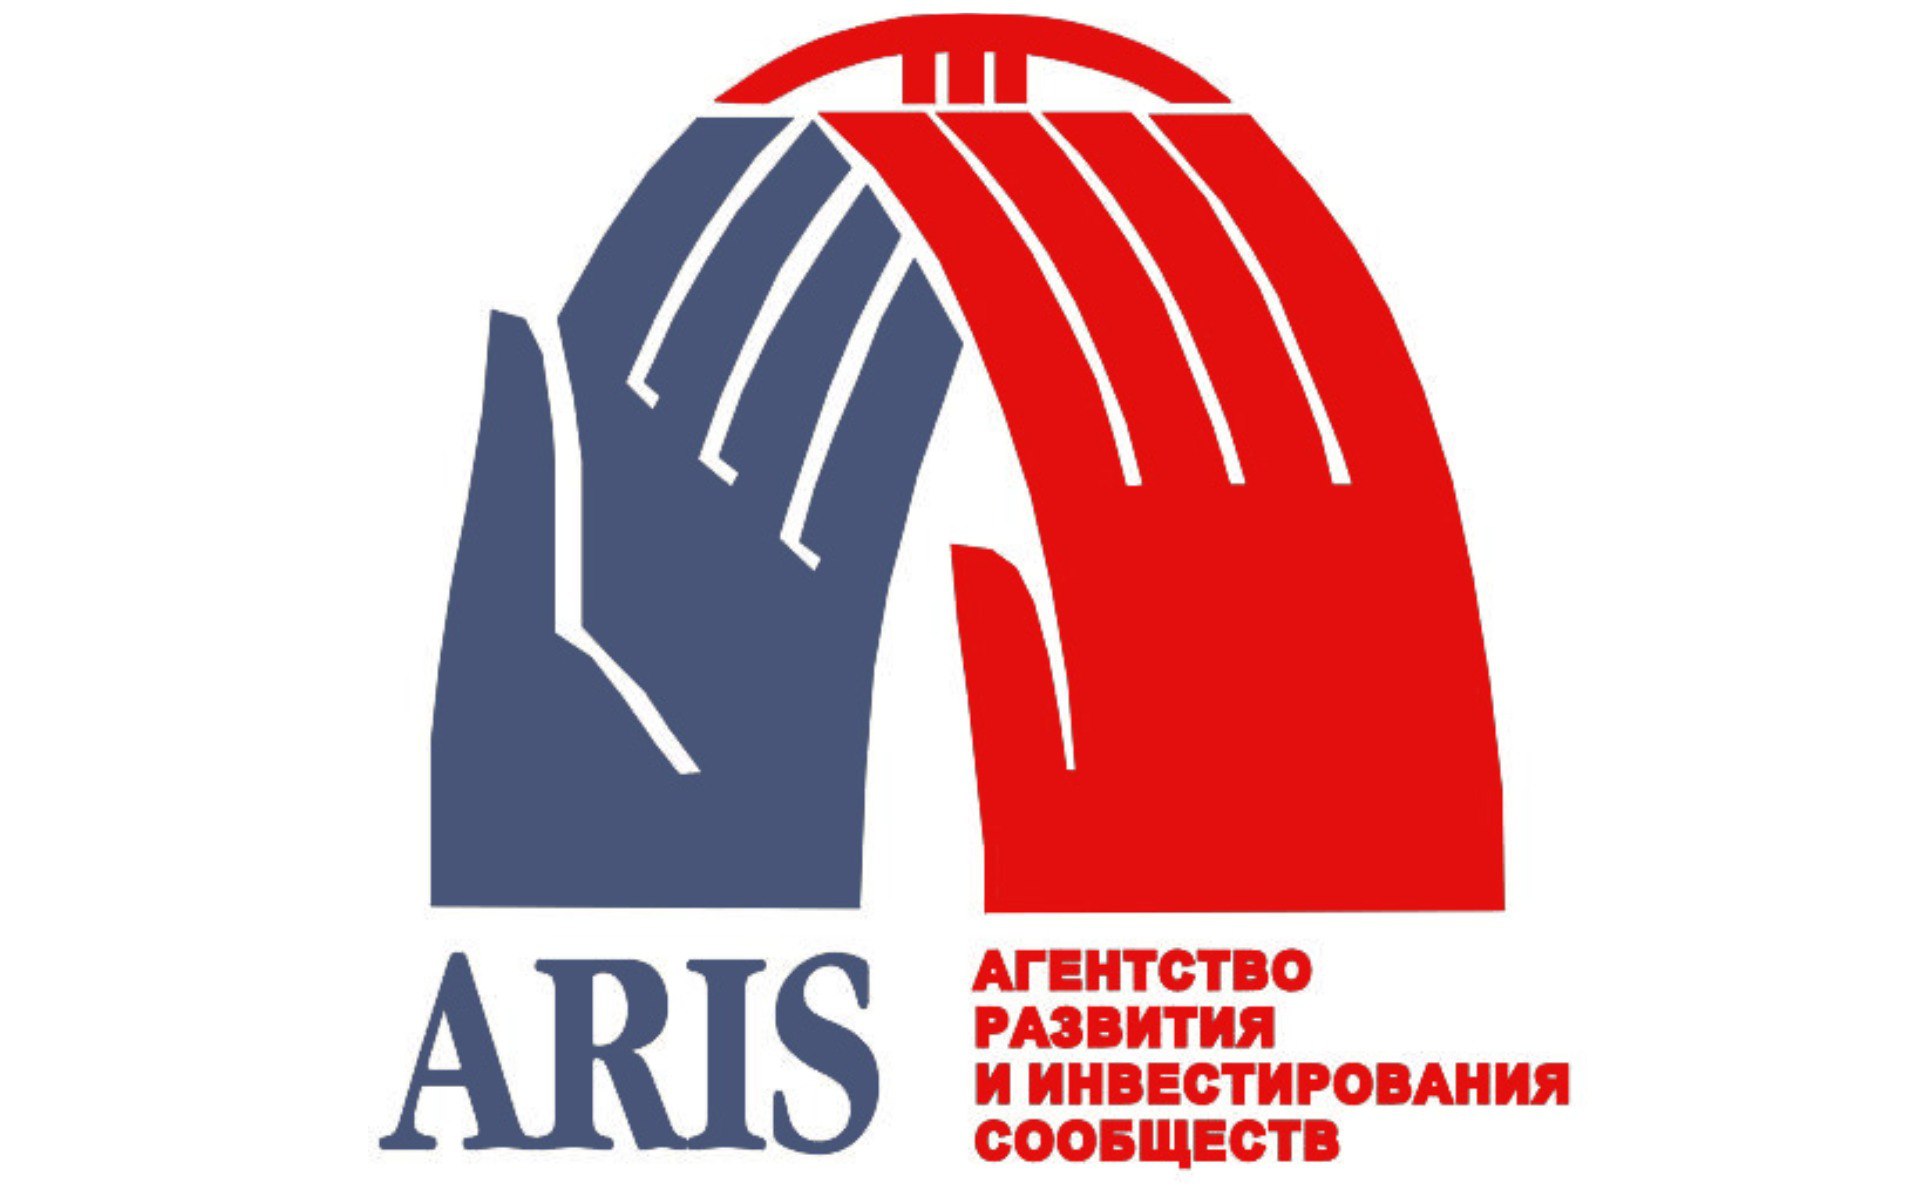 АРИС: Заявление Орунбекова о завышении агентством стоимости строительства соцобъектов в Баткене недостоверно